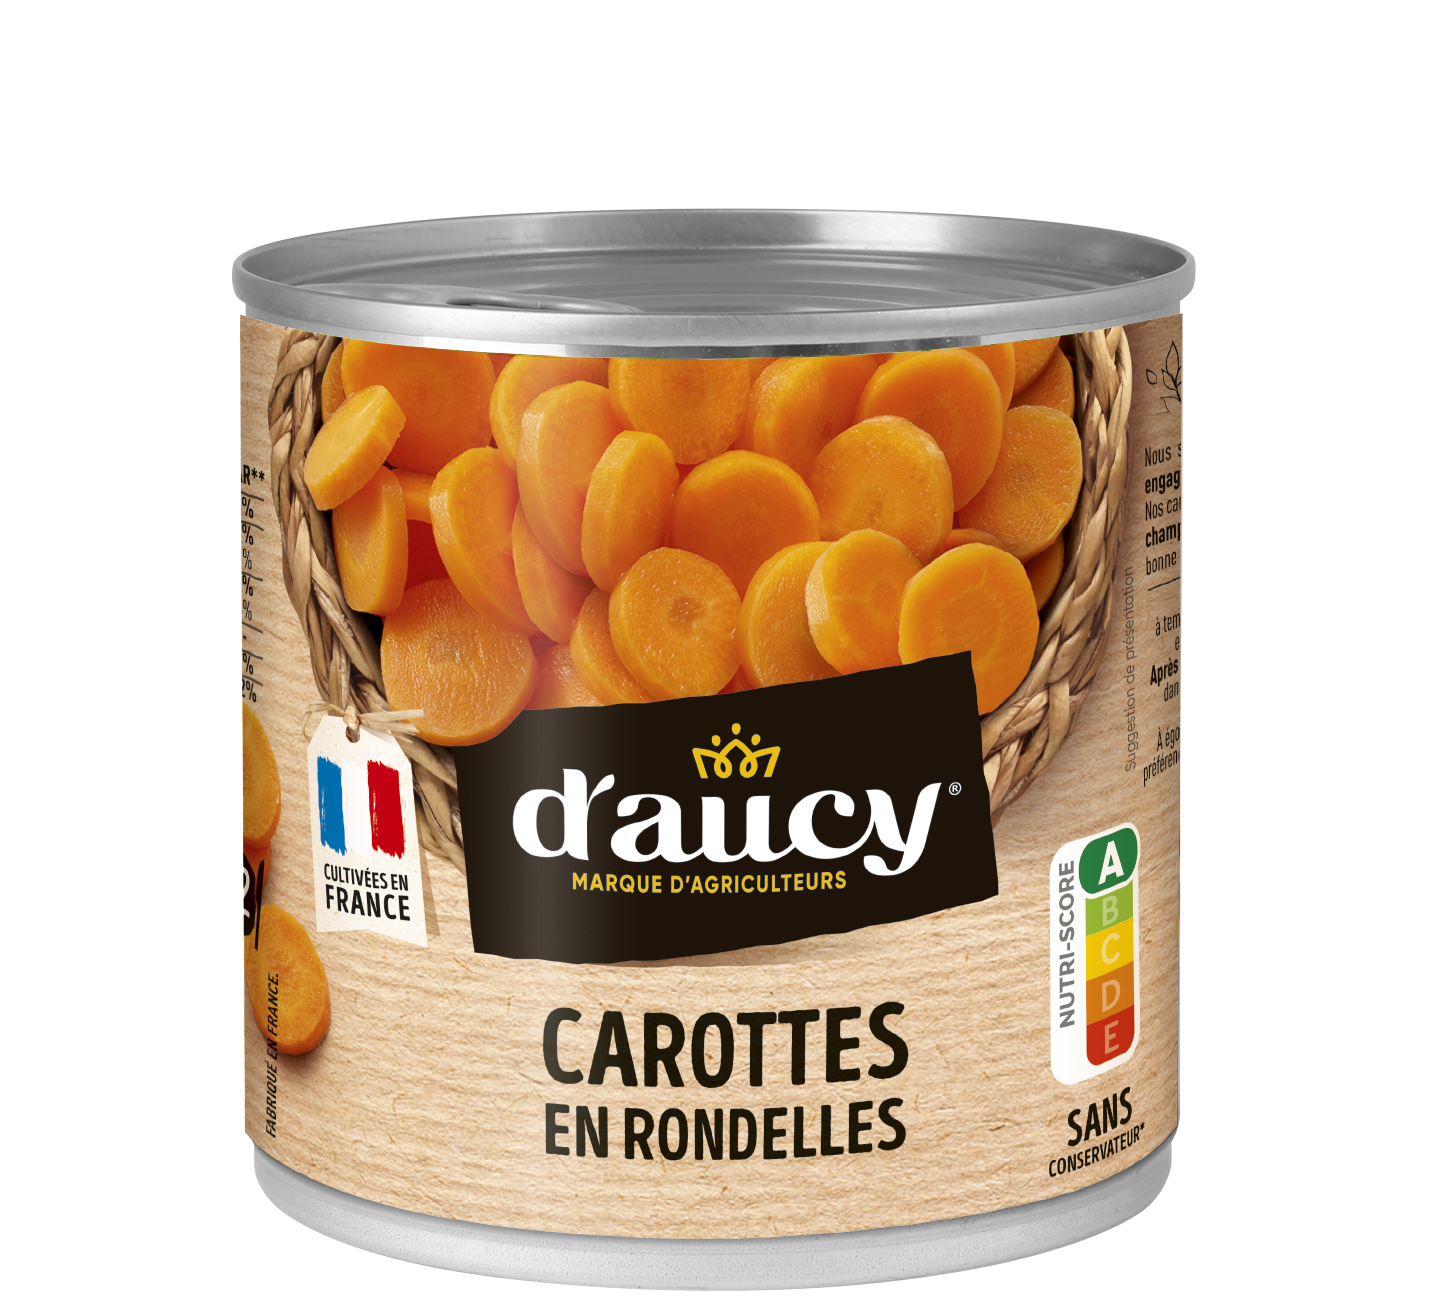 Carottes - Produits - Cuisine française